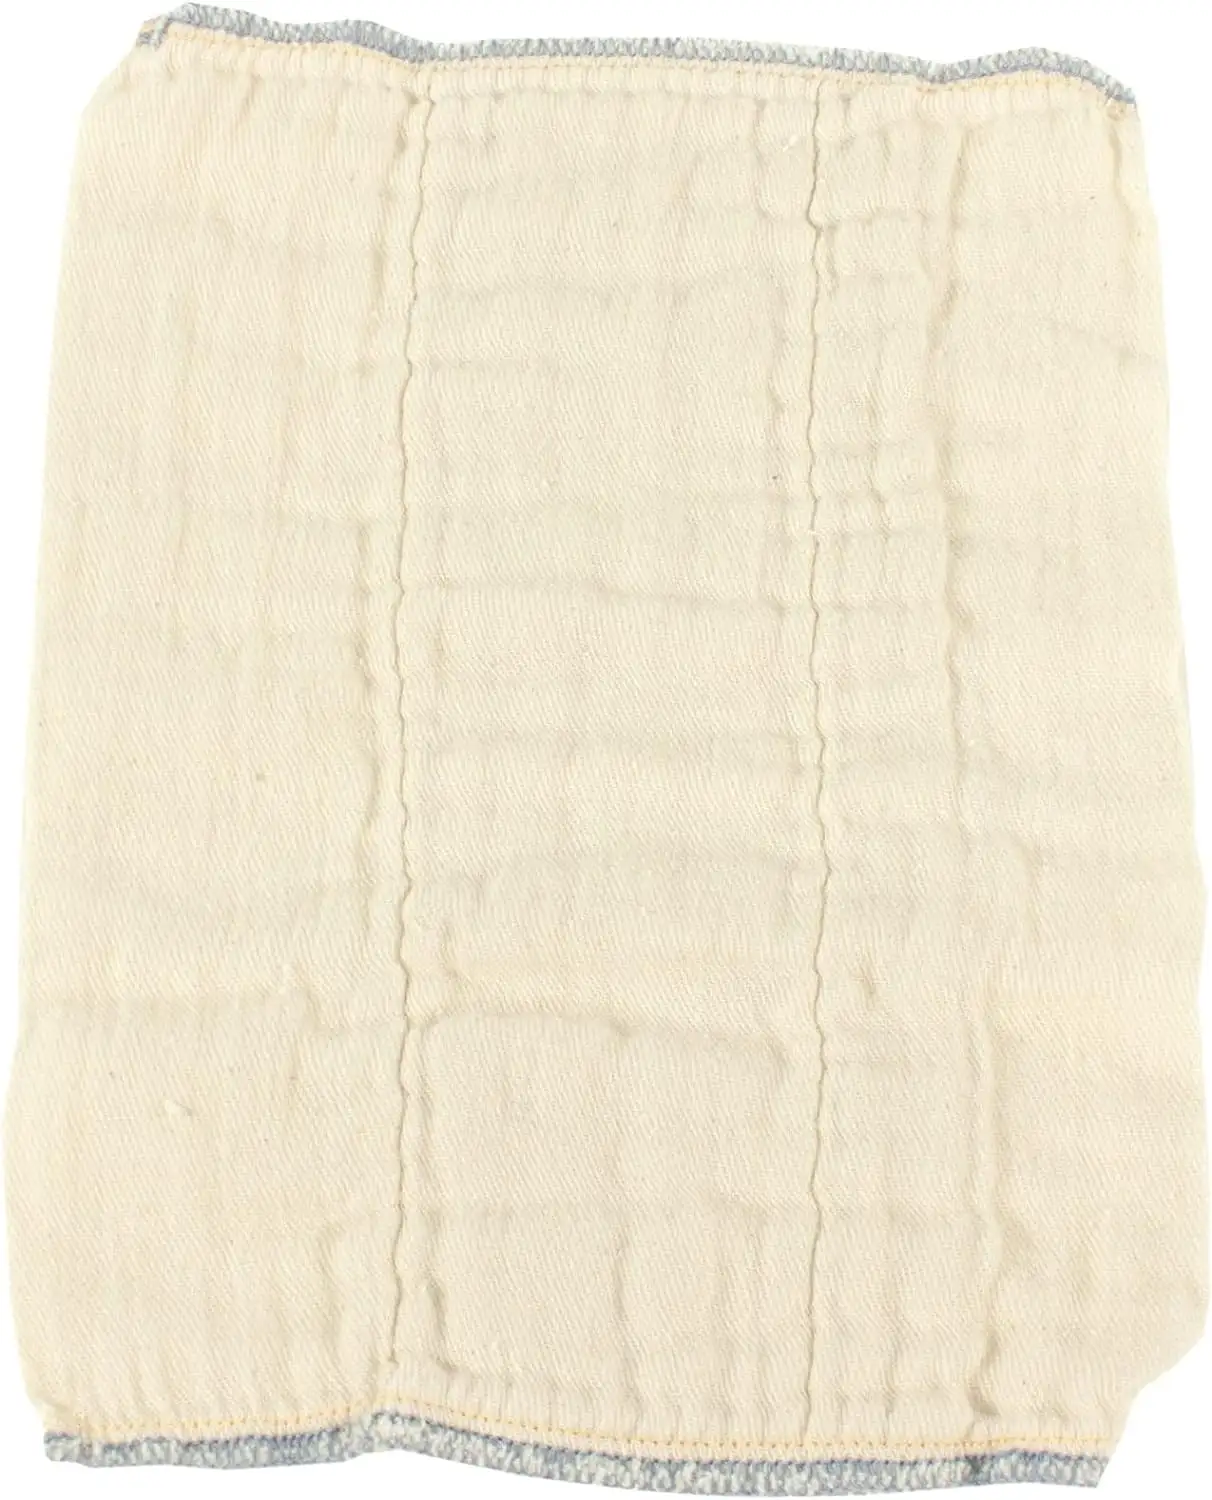 無漂白のプレフォールド布おむつ綿100% 、耐久性、柔らかく、吸収性、新生児4x6x4にフィットする持続可能